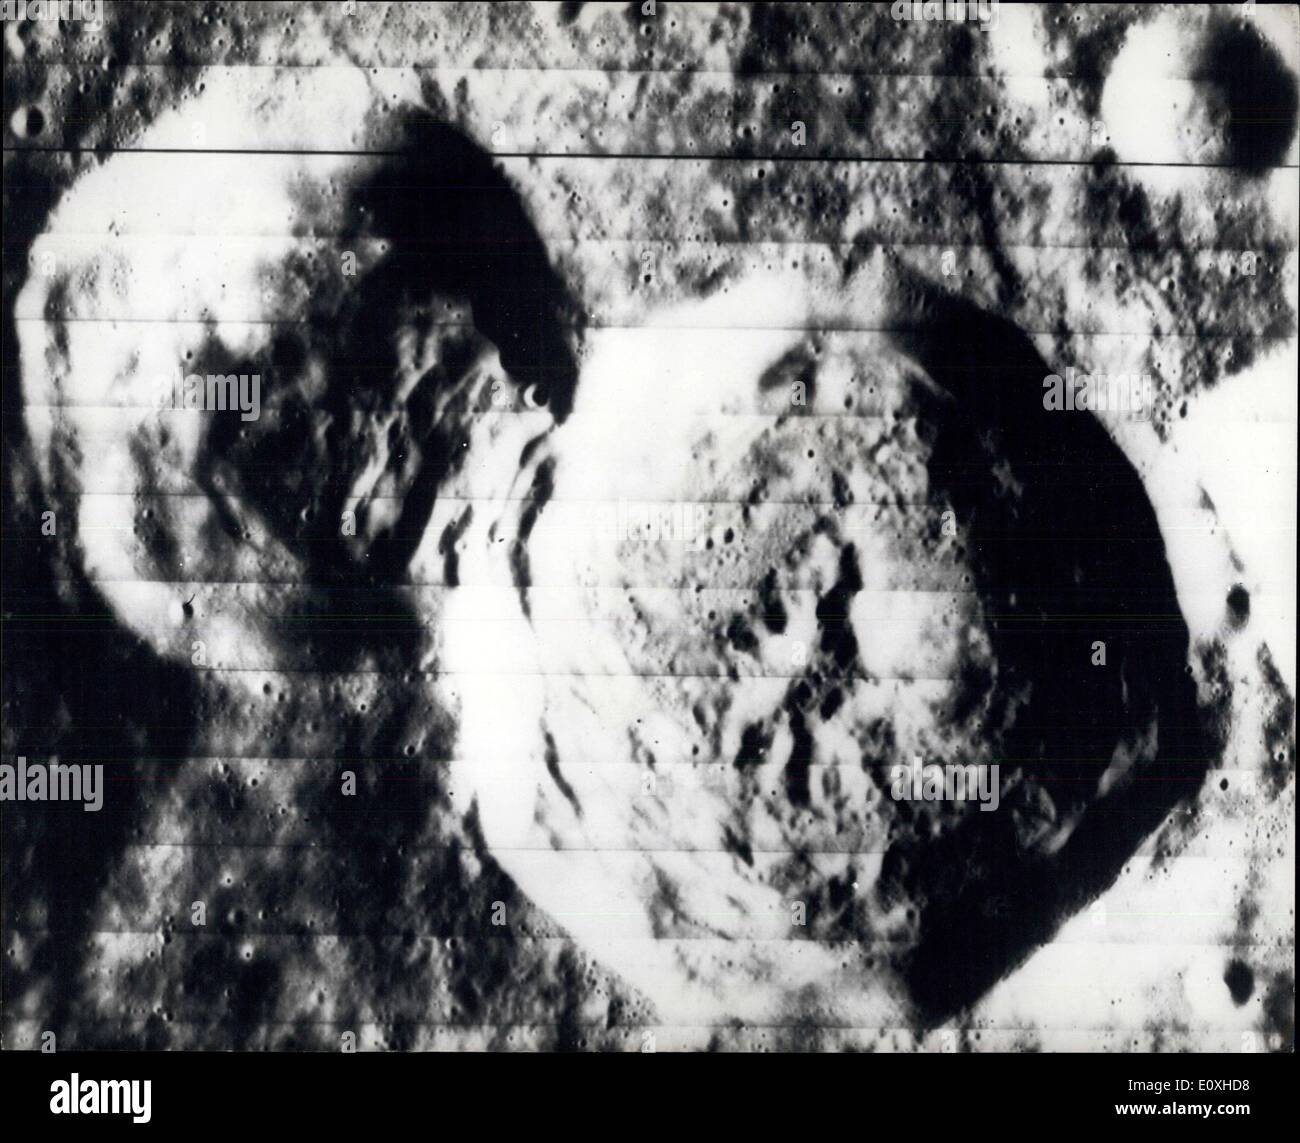 14 ottobre 1966 - lato nascosto della Luna: Una fotografia ad alta risoluzione fatta dalla navicella spaziale Lunar Orbiter  dell'Amministrazione Nazionale dell'Arenautica e dello spazio il 26 agosto 1966, di un'area sul lato nascosto della Luna mostra un fenomeno geologico insolito formato dalla posizione super di un grande erizzatore su un vecchio, leggermente più piccolo. Lo spostamento del materiale della parete nel rater più vecchio è chiaramente visibile. Il nord è in cima alla foto quando è visto con il più grande dei due crateri in alto a sinistra e il più piccolo erater in basso a destra Foto Stock